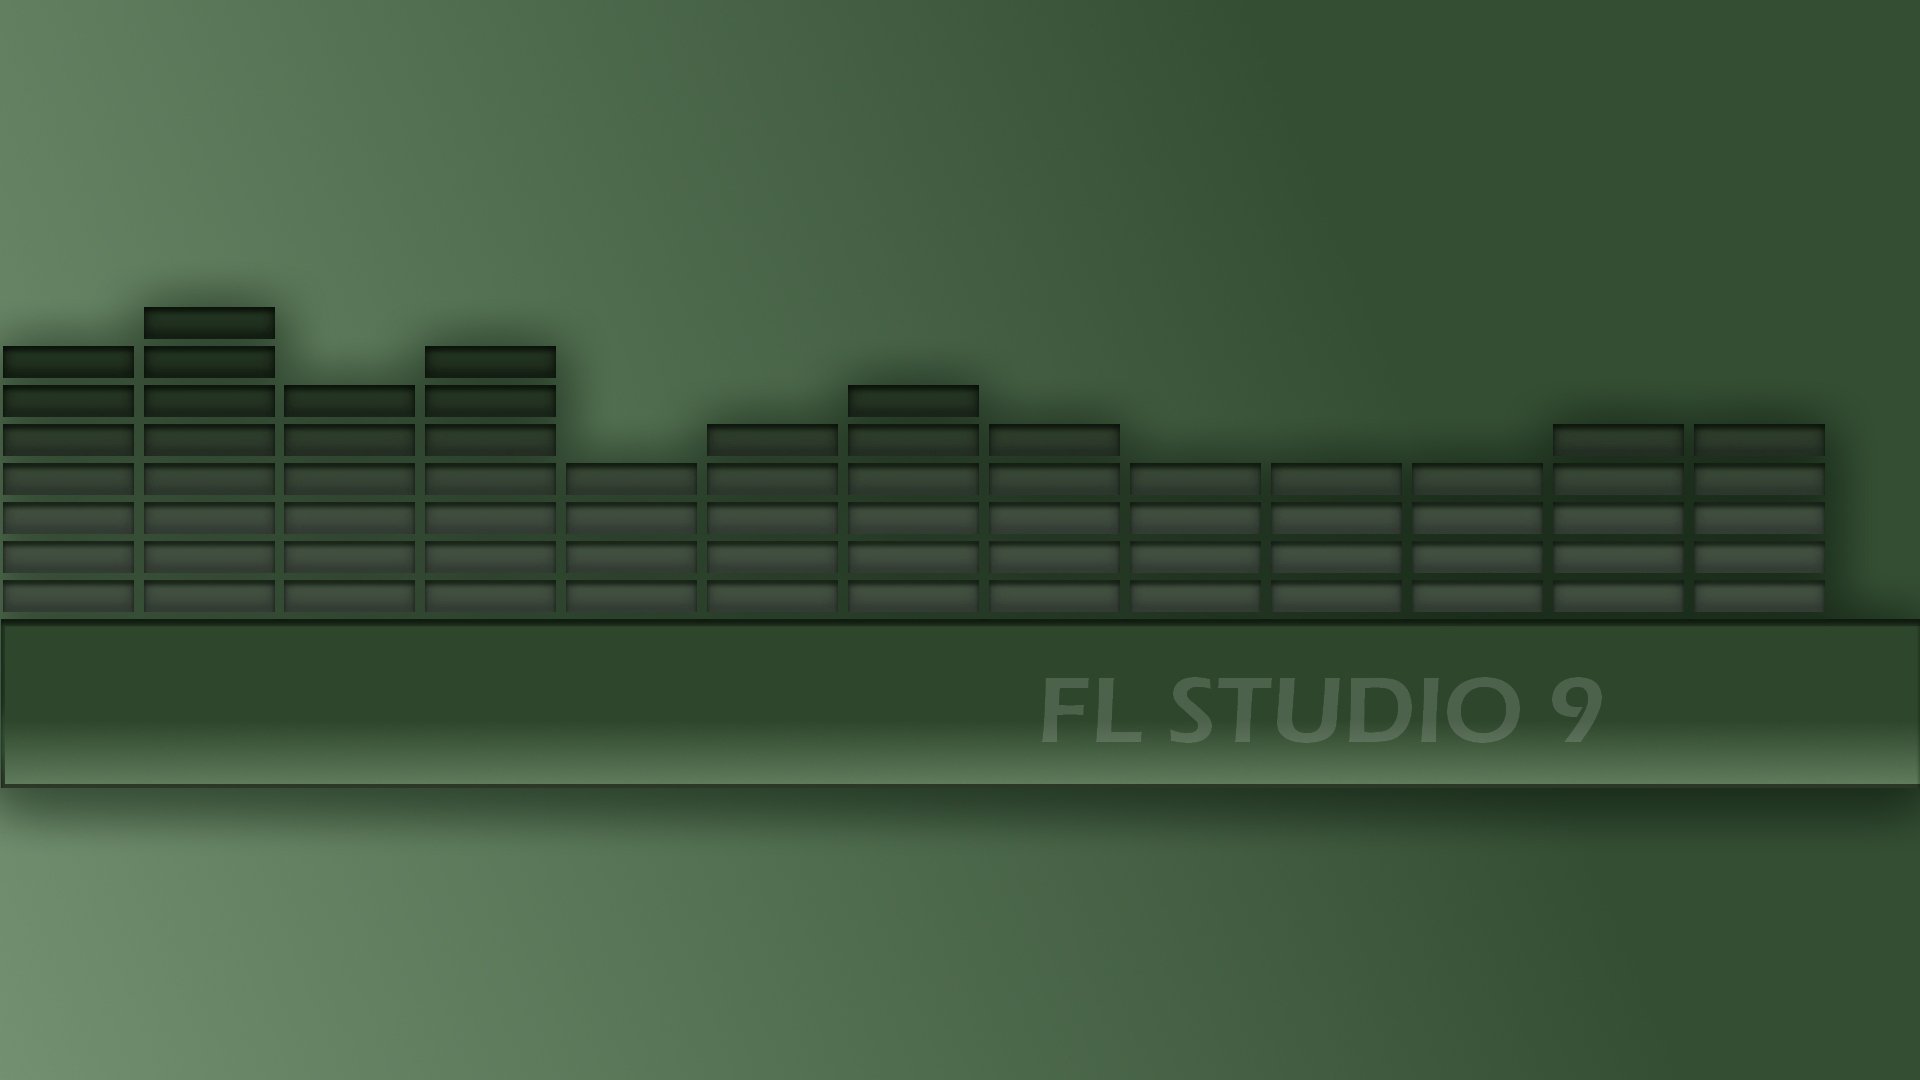 Fl Studio 1920X1080 Wallpapers